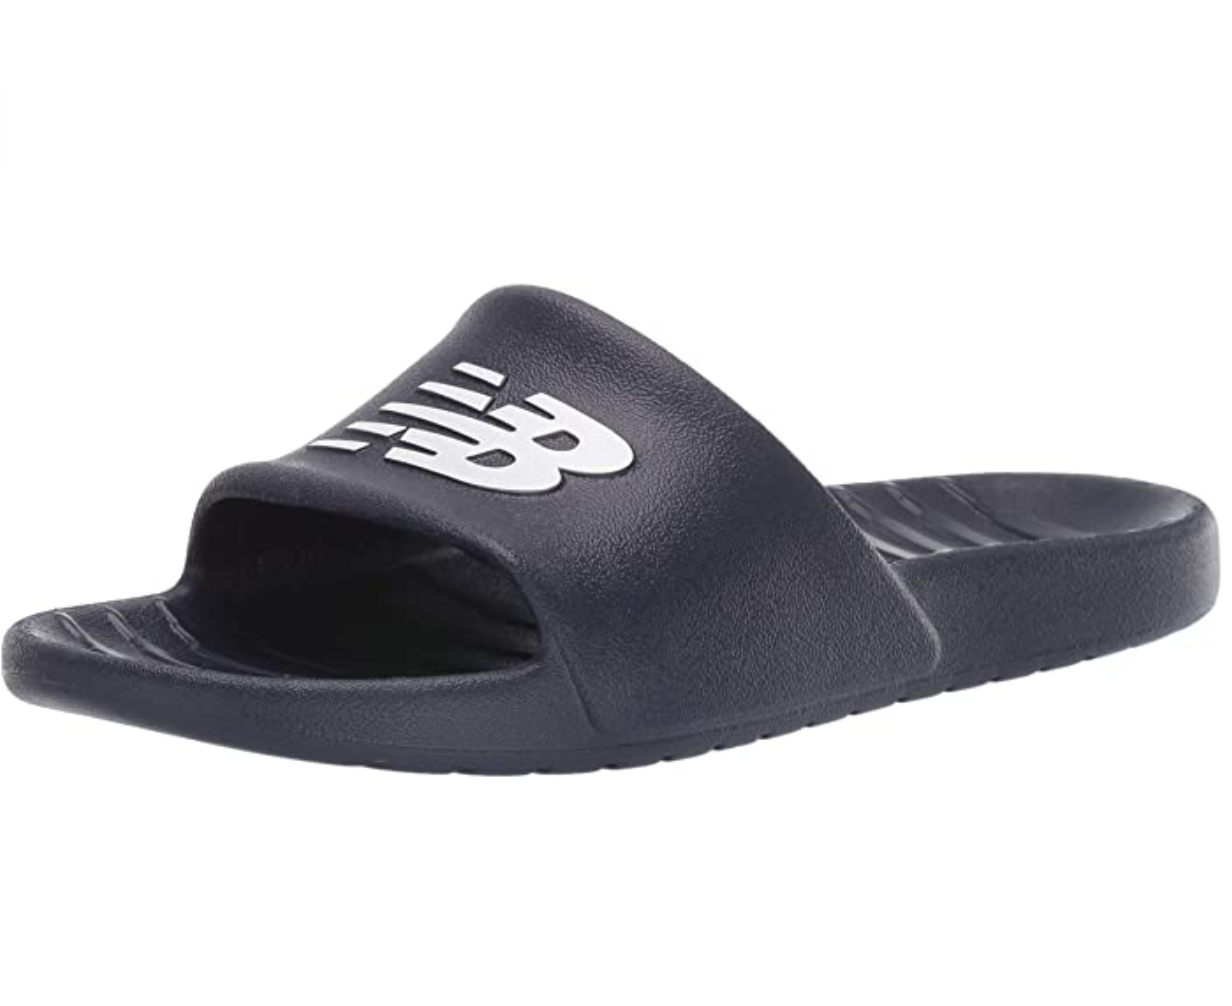 New Balance Impact Absorbing Rubber Men’s Slide Sandal